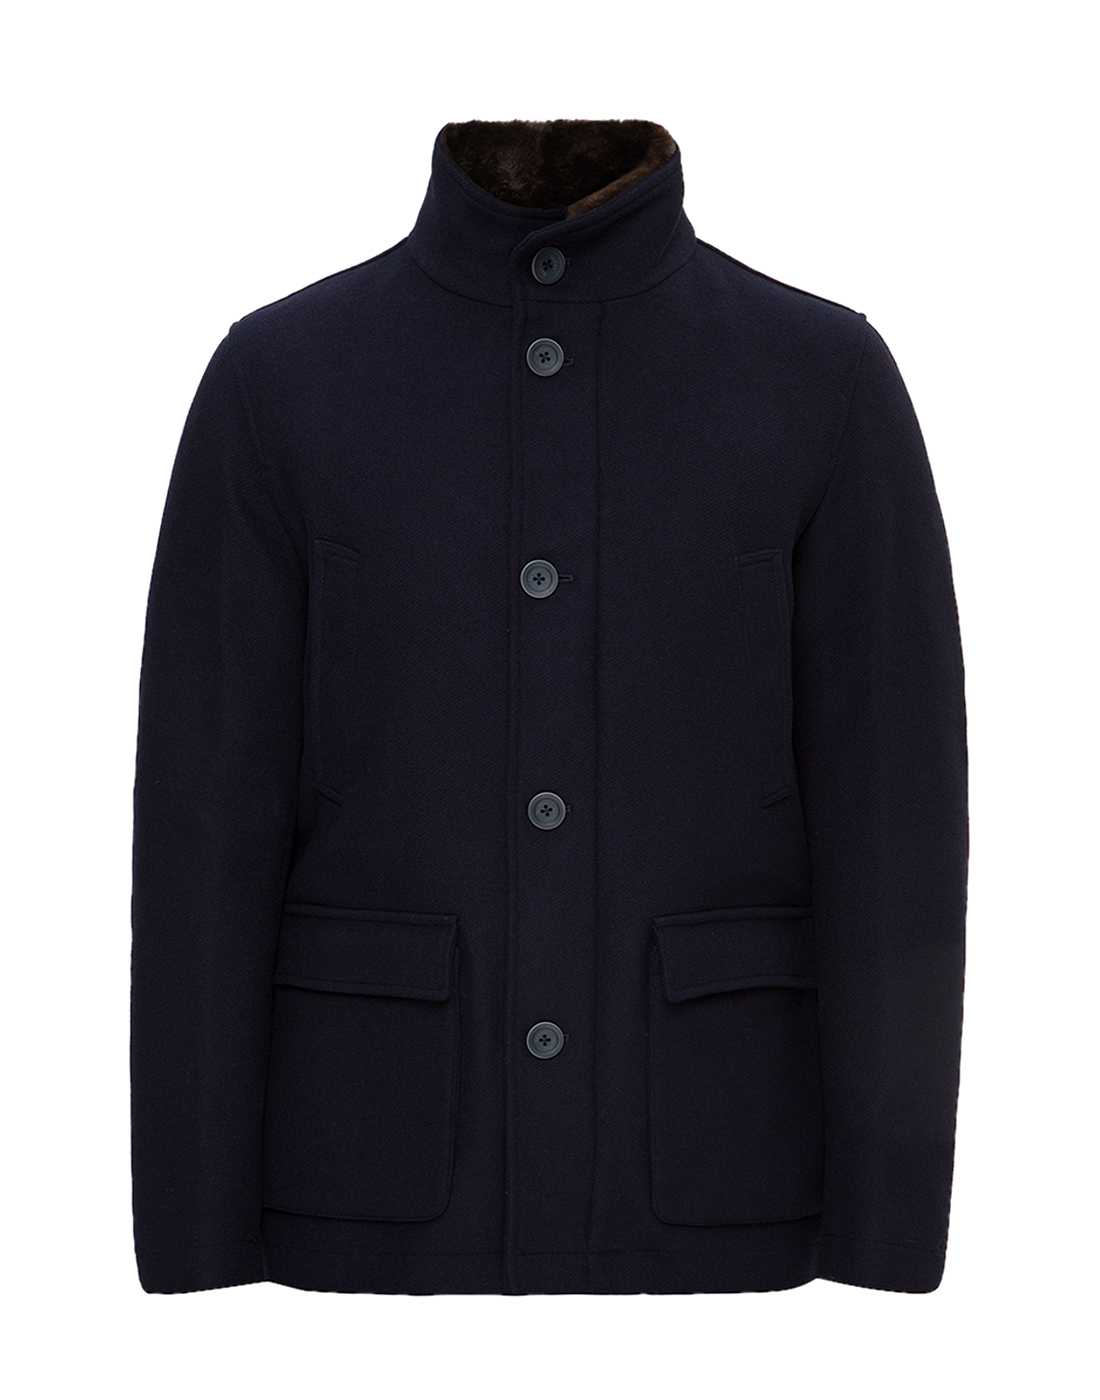 Мужская темно-синяя шерстяная куртка Herno SGC0041U - 39601 - 9290-1